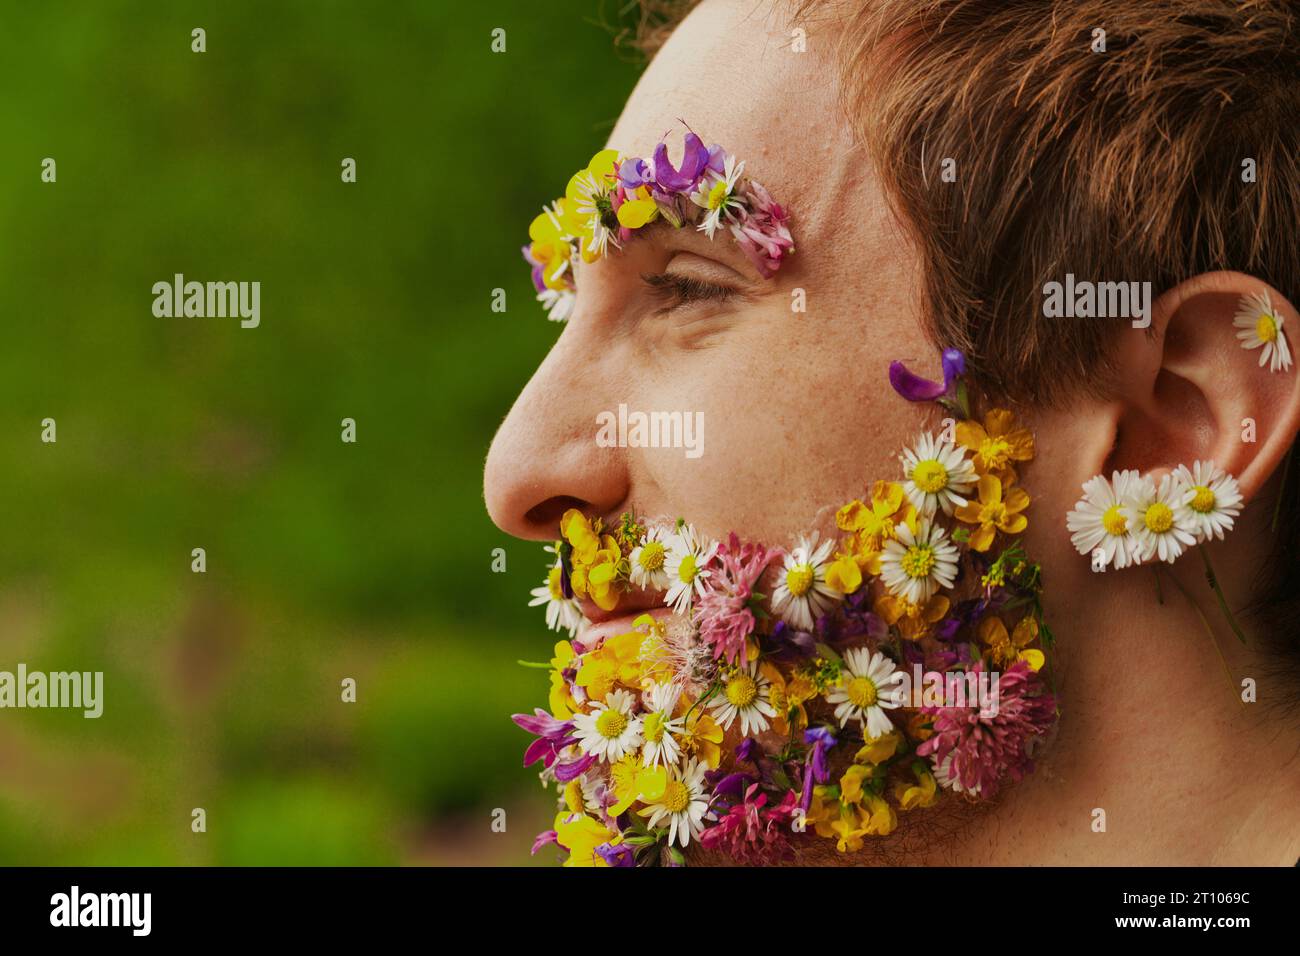 Umgeben von Bäumen sieht man einen Mann mit einem floralen Gesicht. Eine solche Affinität zur Natur, ob eingebildet oder real, spricht von seiner Leidenschaft für die Umwelt Stockfoto